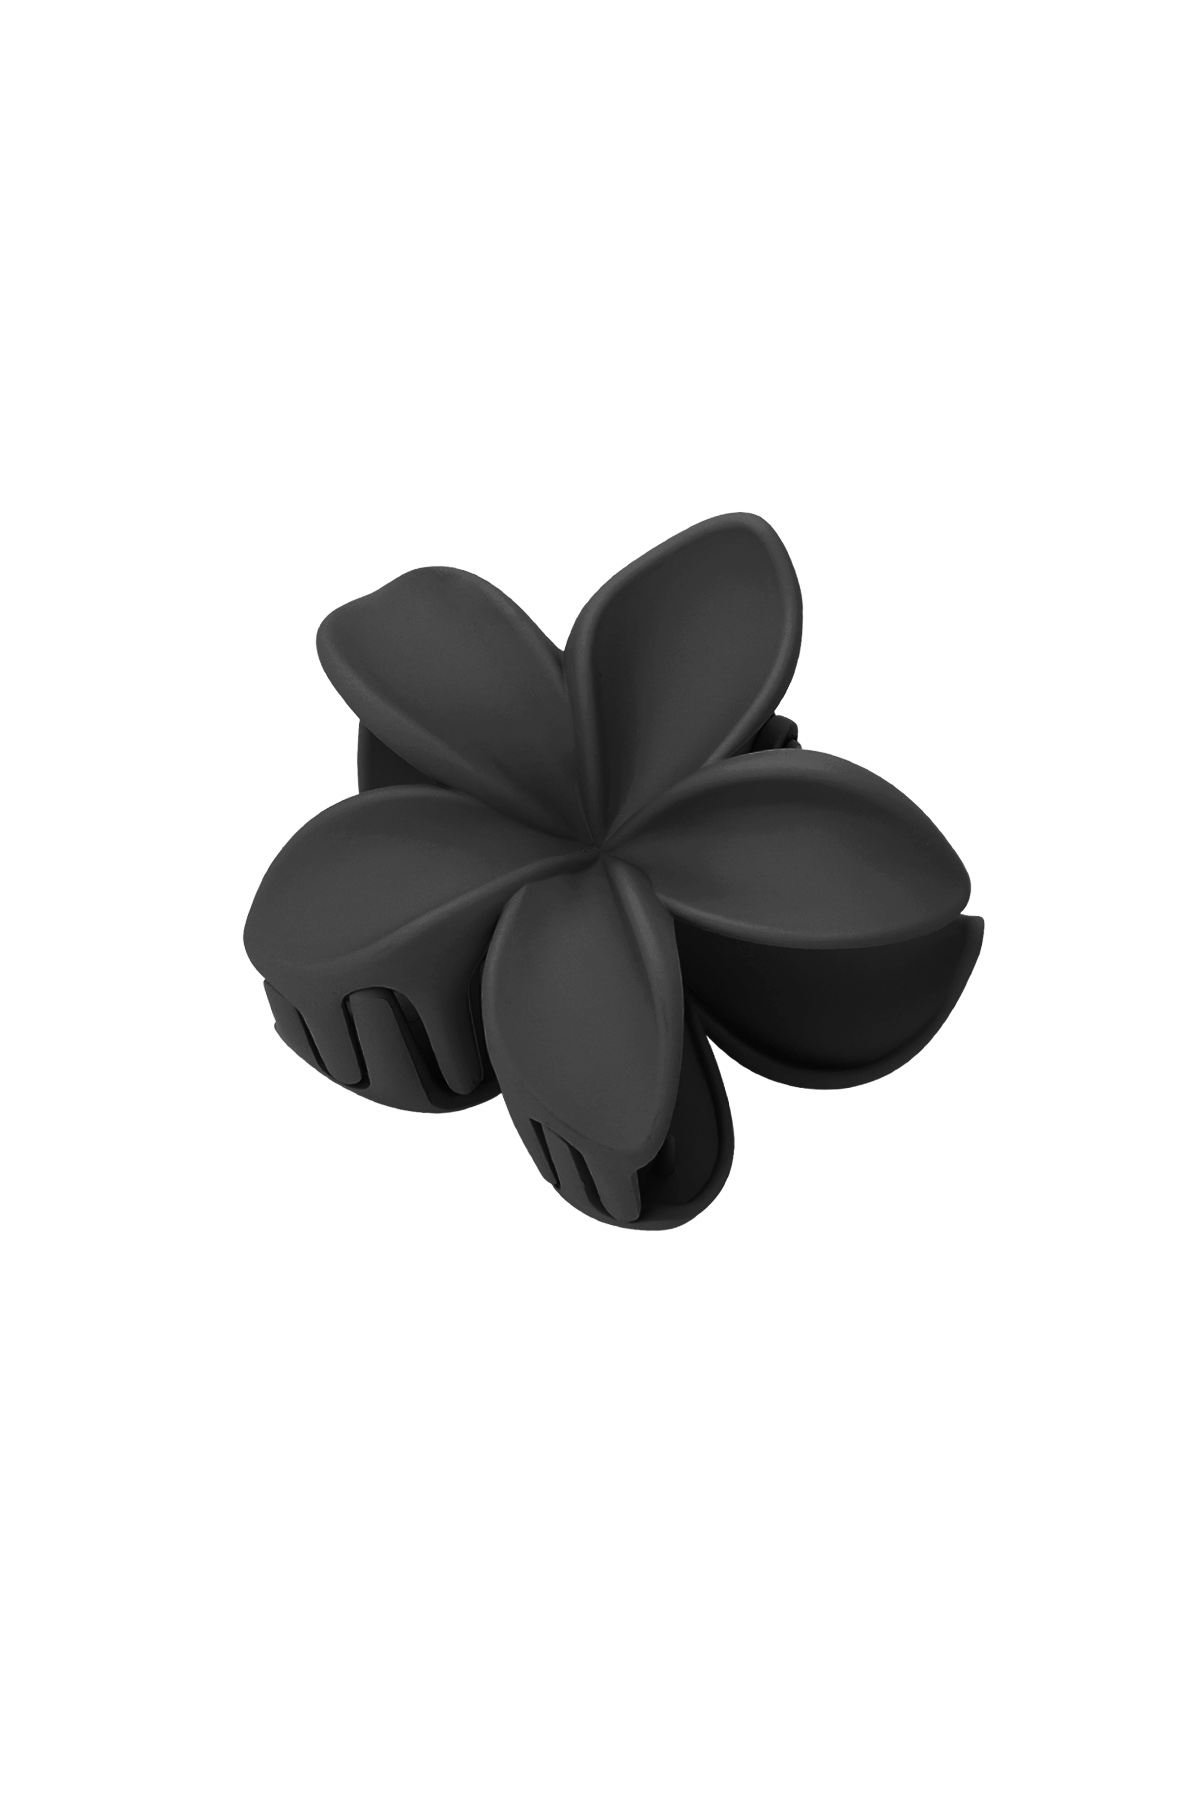 Haarspange Blume - schwarz Kunststoff